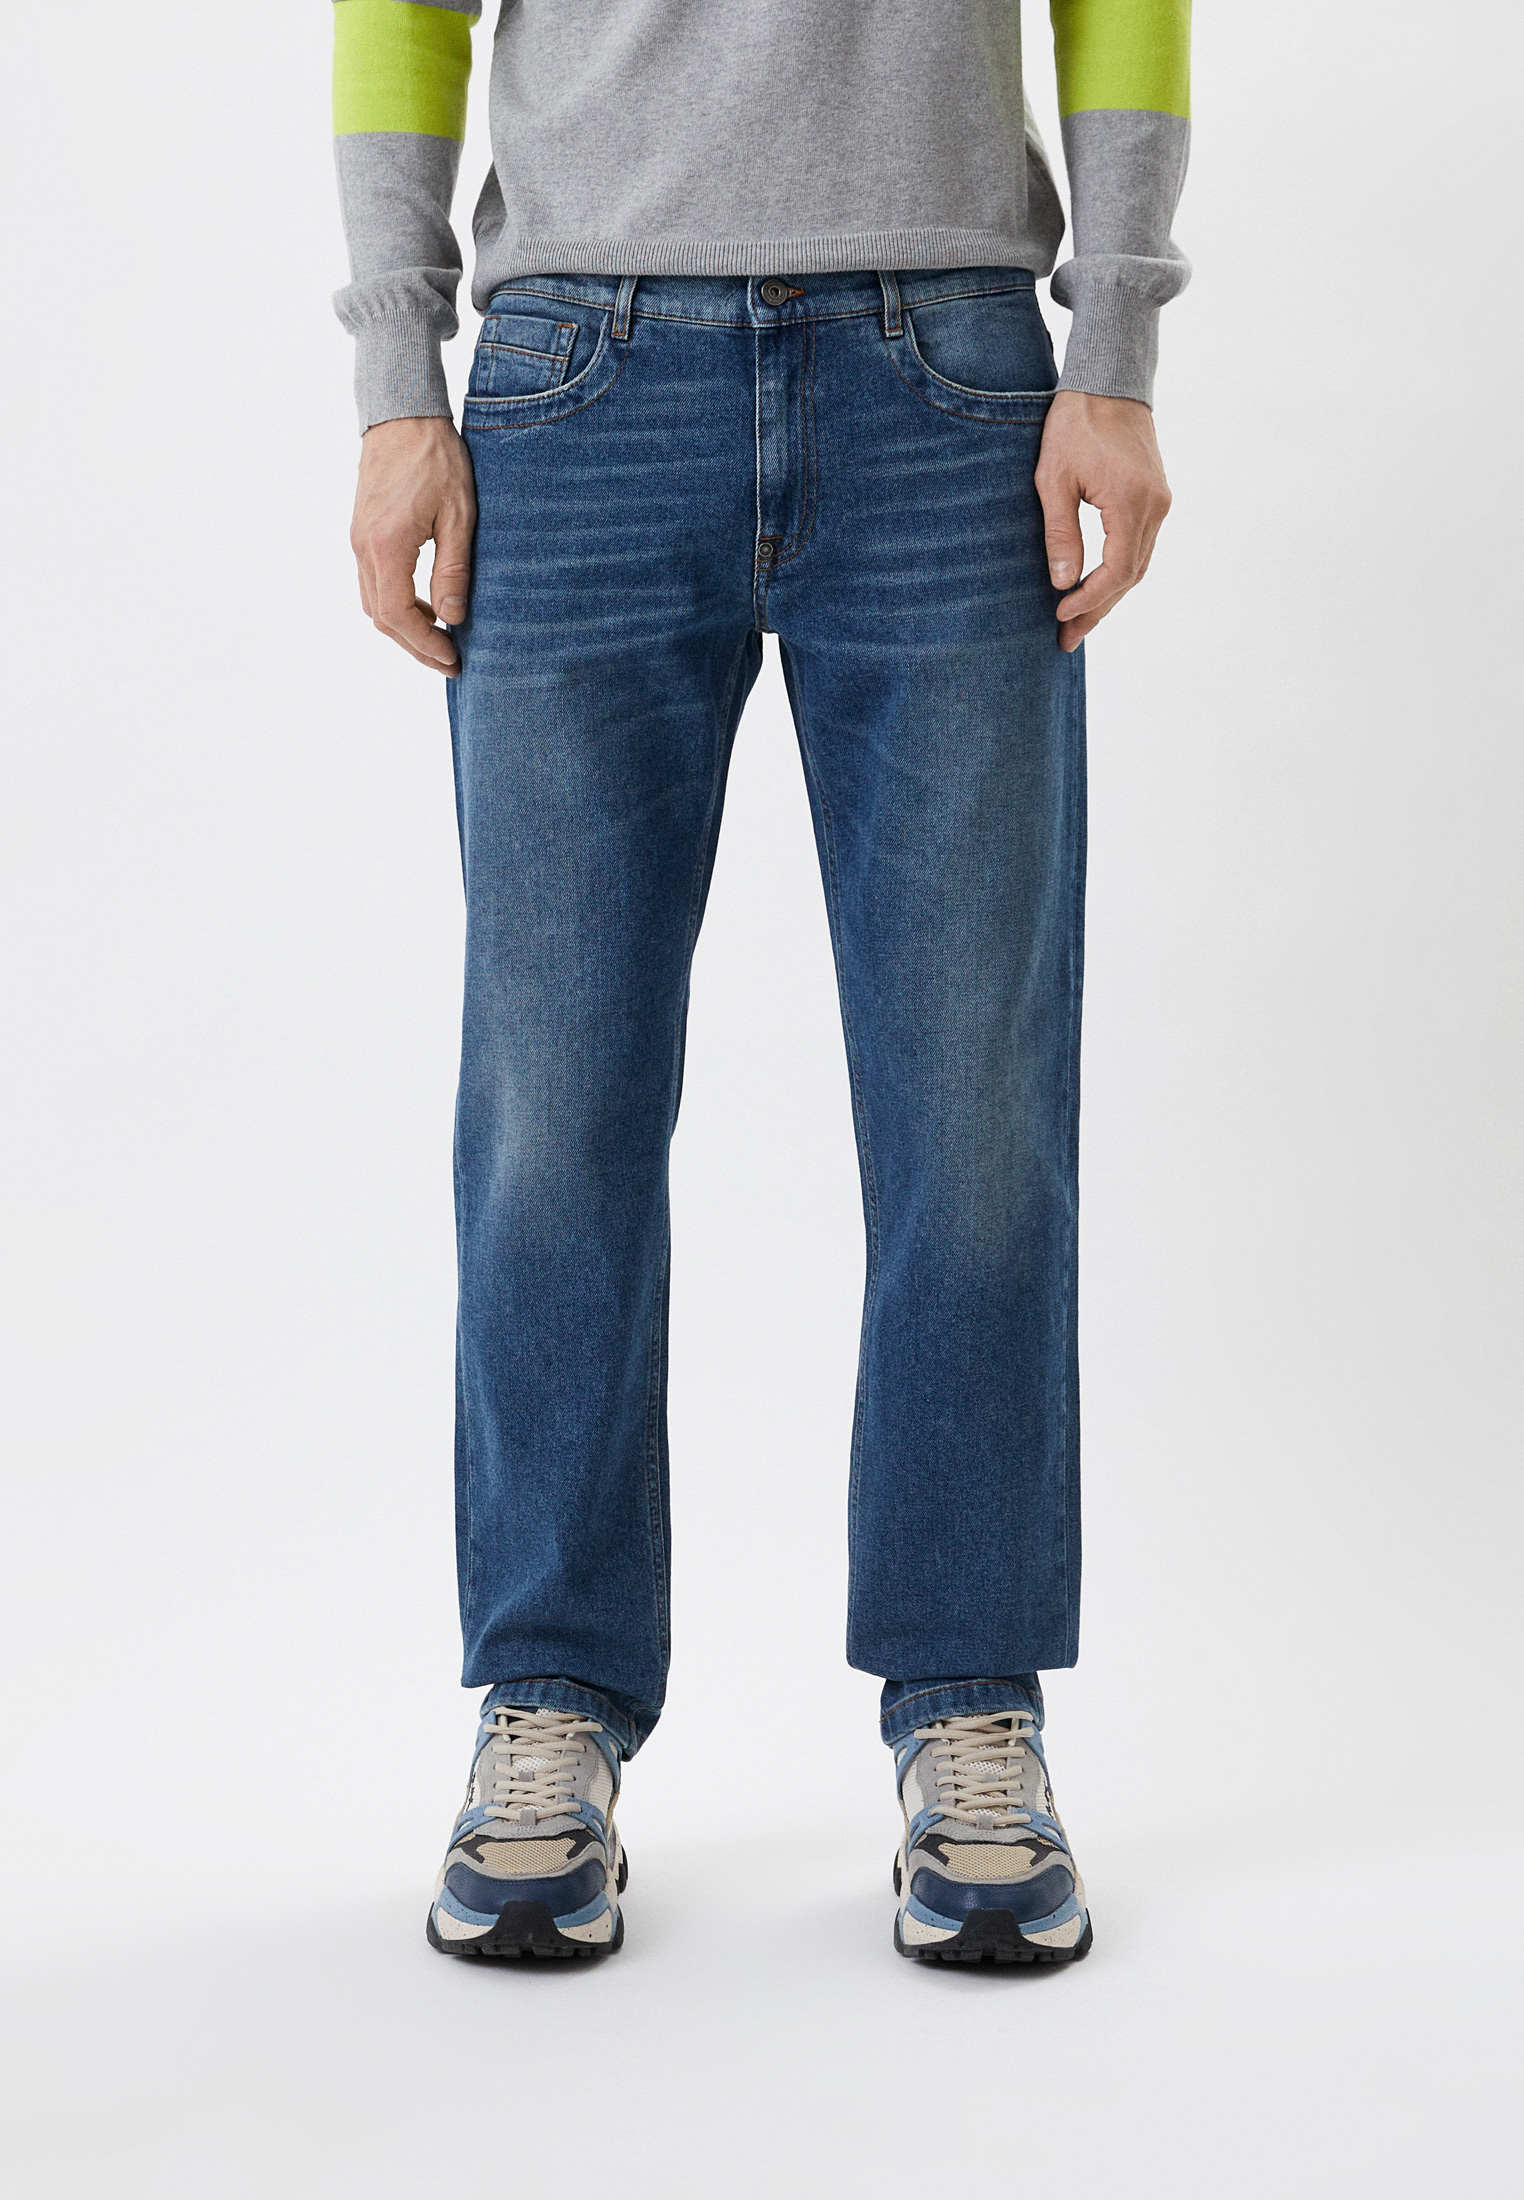 Мужские прямые джинсы Bikkembergs (Биккембергс) CQ11203S3570: изображение 1